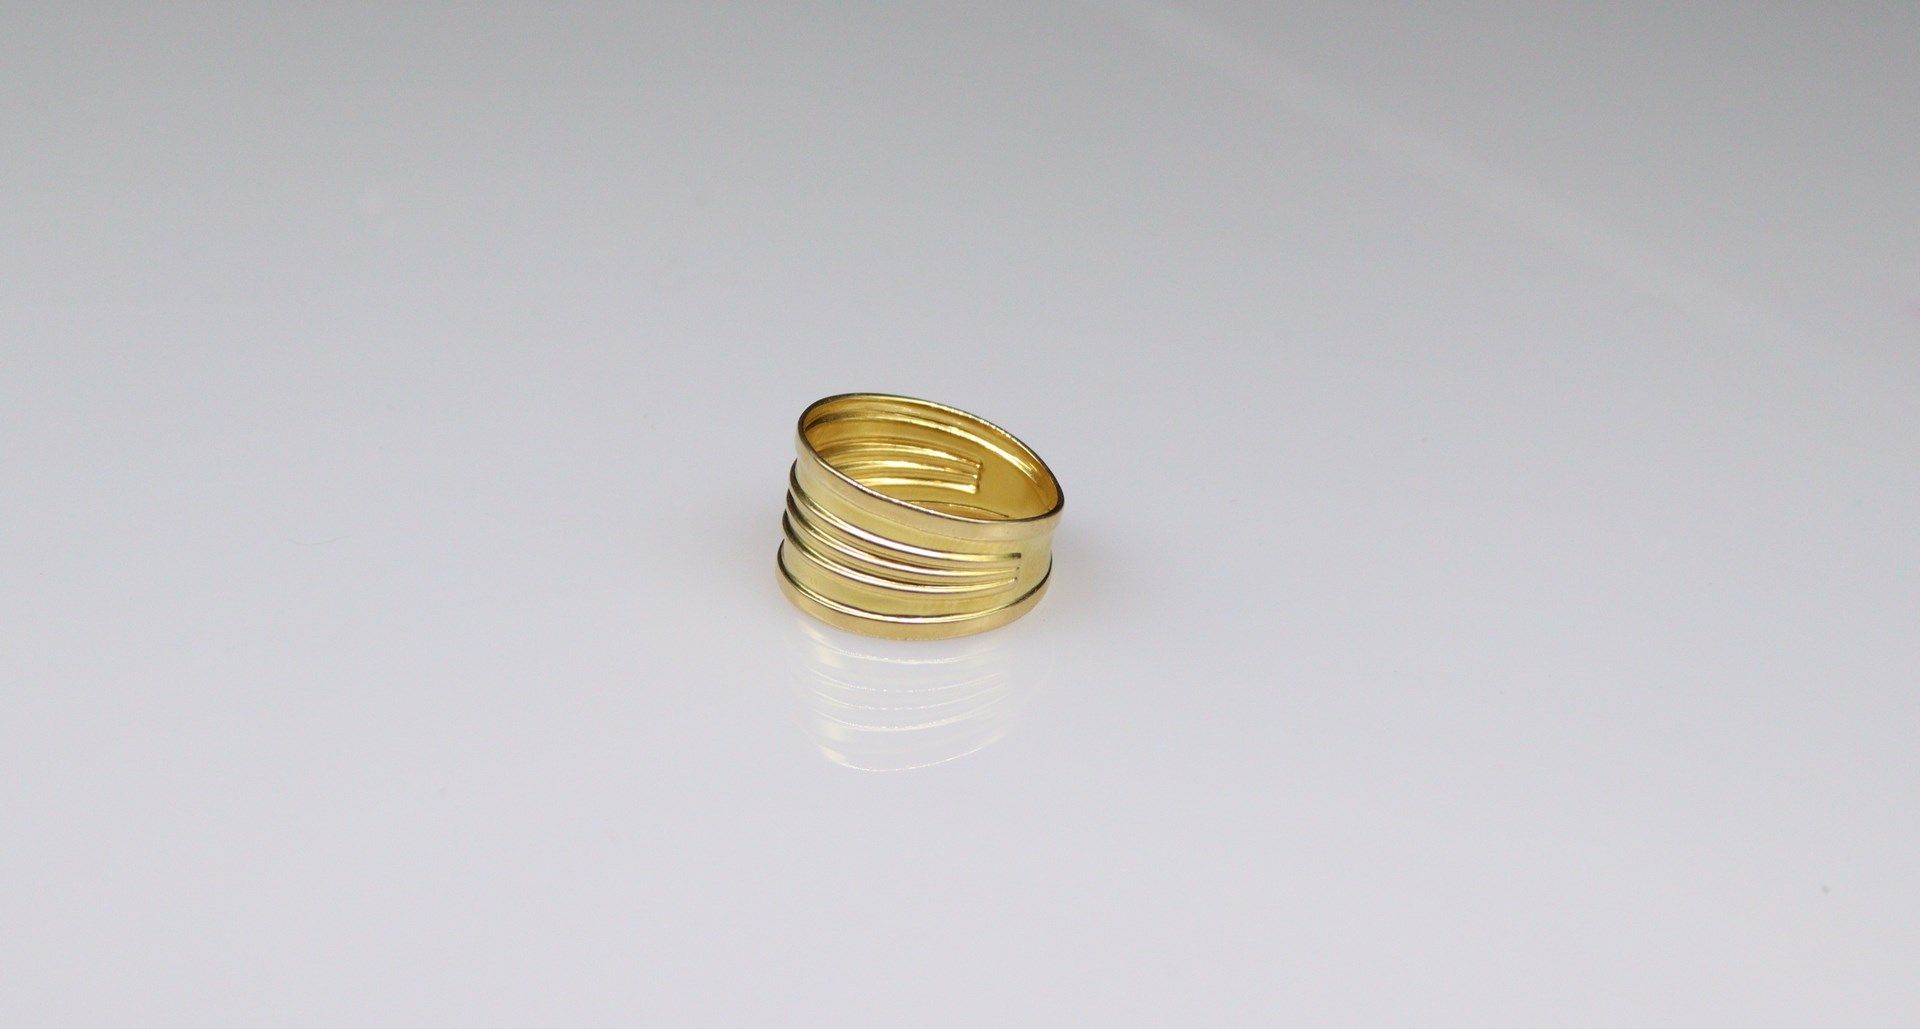 Null Bandeau-Ring aus 18-karätigem Gelbgold (750).
Fingerumfang: 55 - Gewicht: 2&hellip;